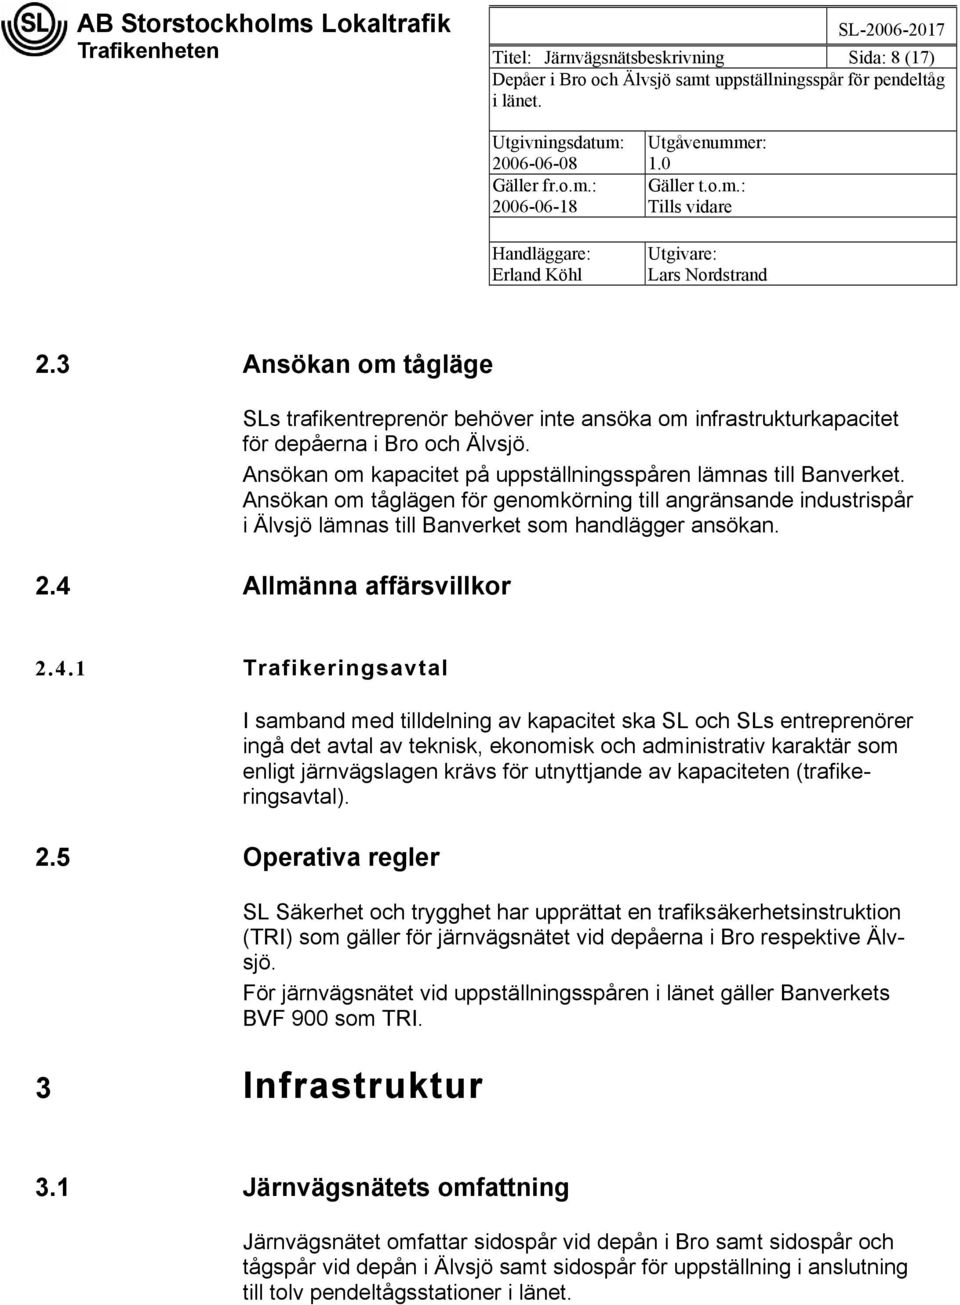 4 Allmänna affärsvillkor 2.4.1 Trafikeringsavtal 2.